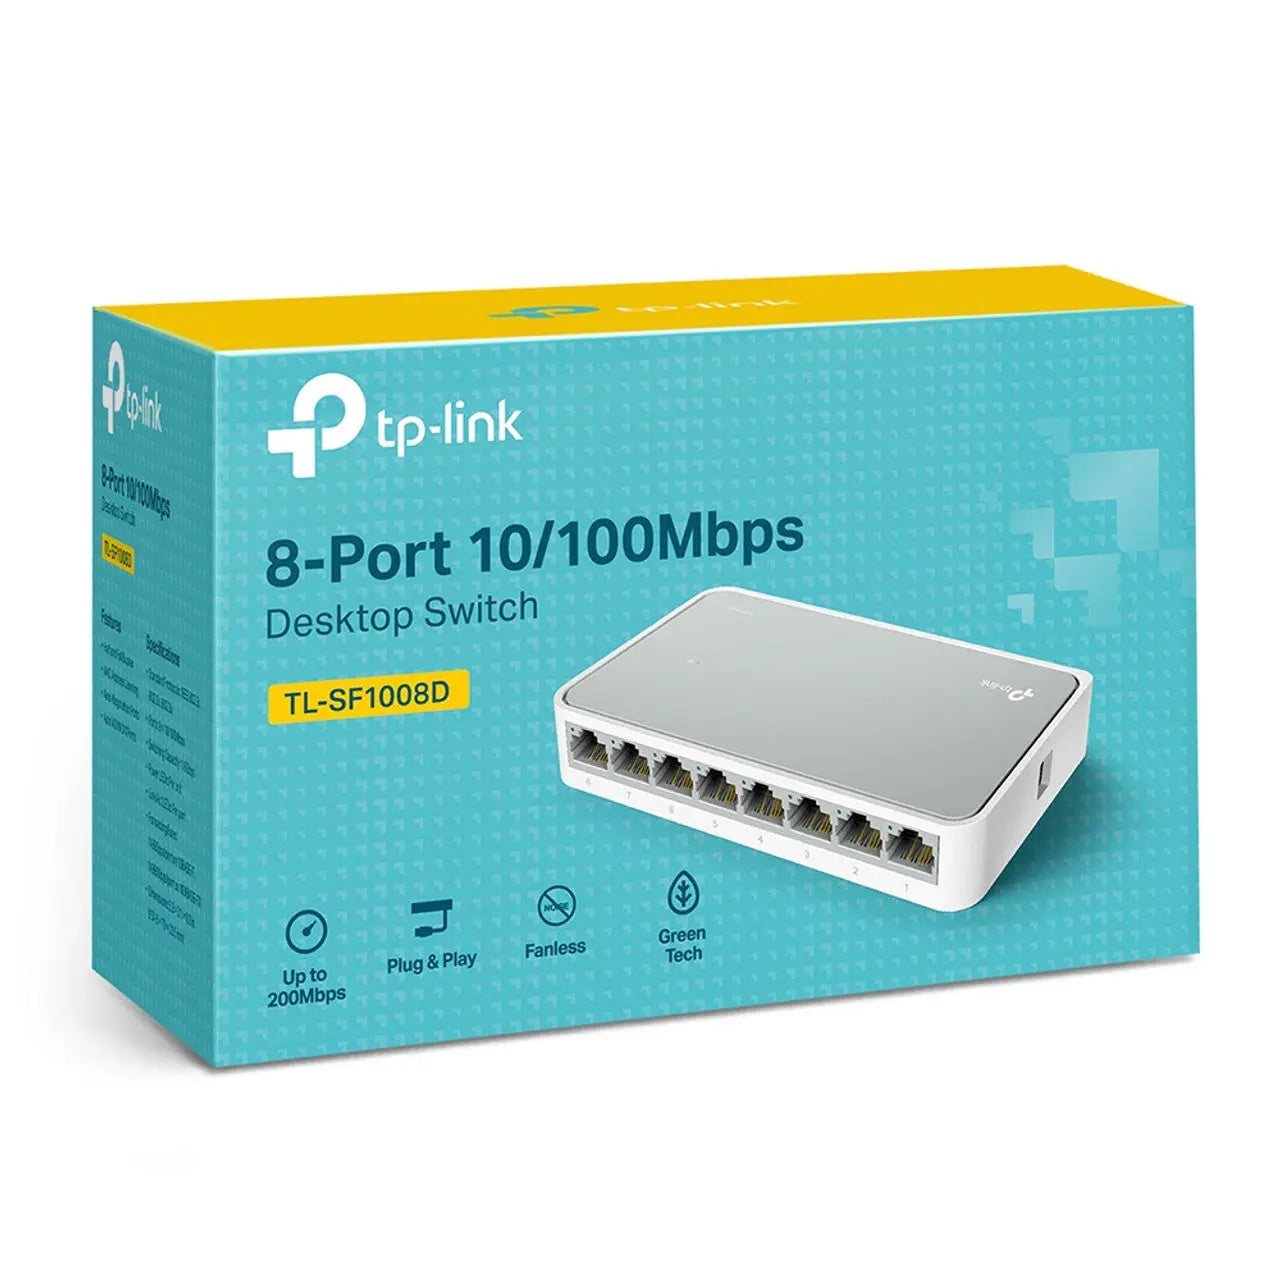 Tplink 8-Port 10/100Mbps Desktop Switch | TL-SF1008D Tplink